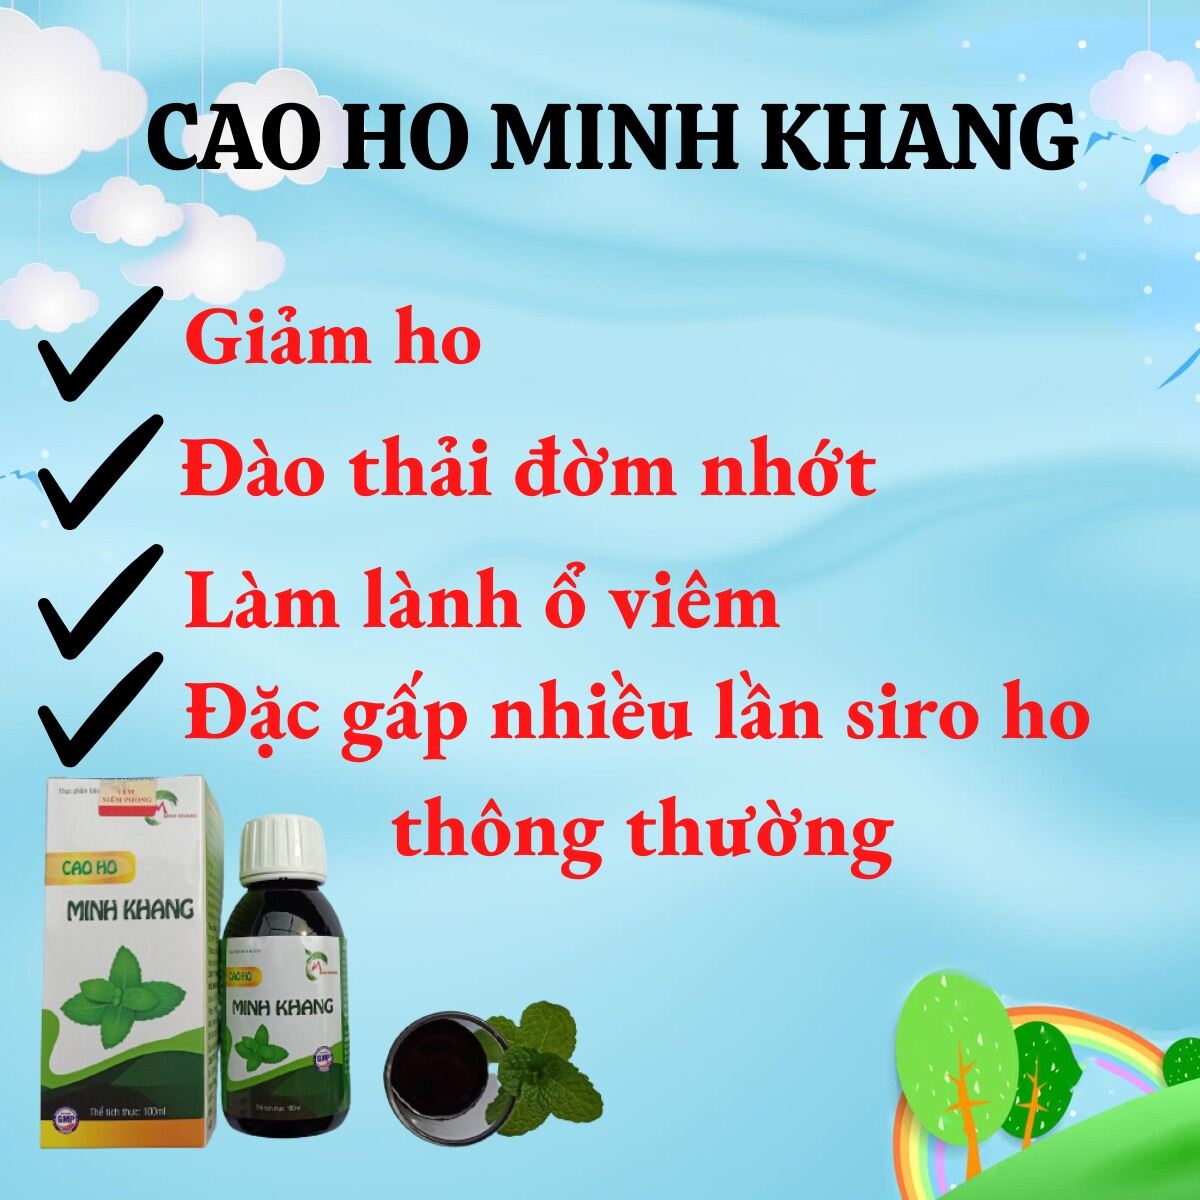 CAO HO MINH KHANG